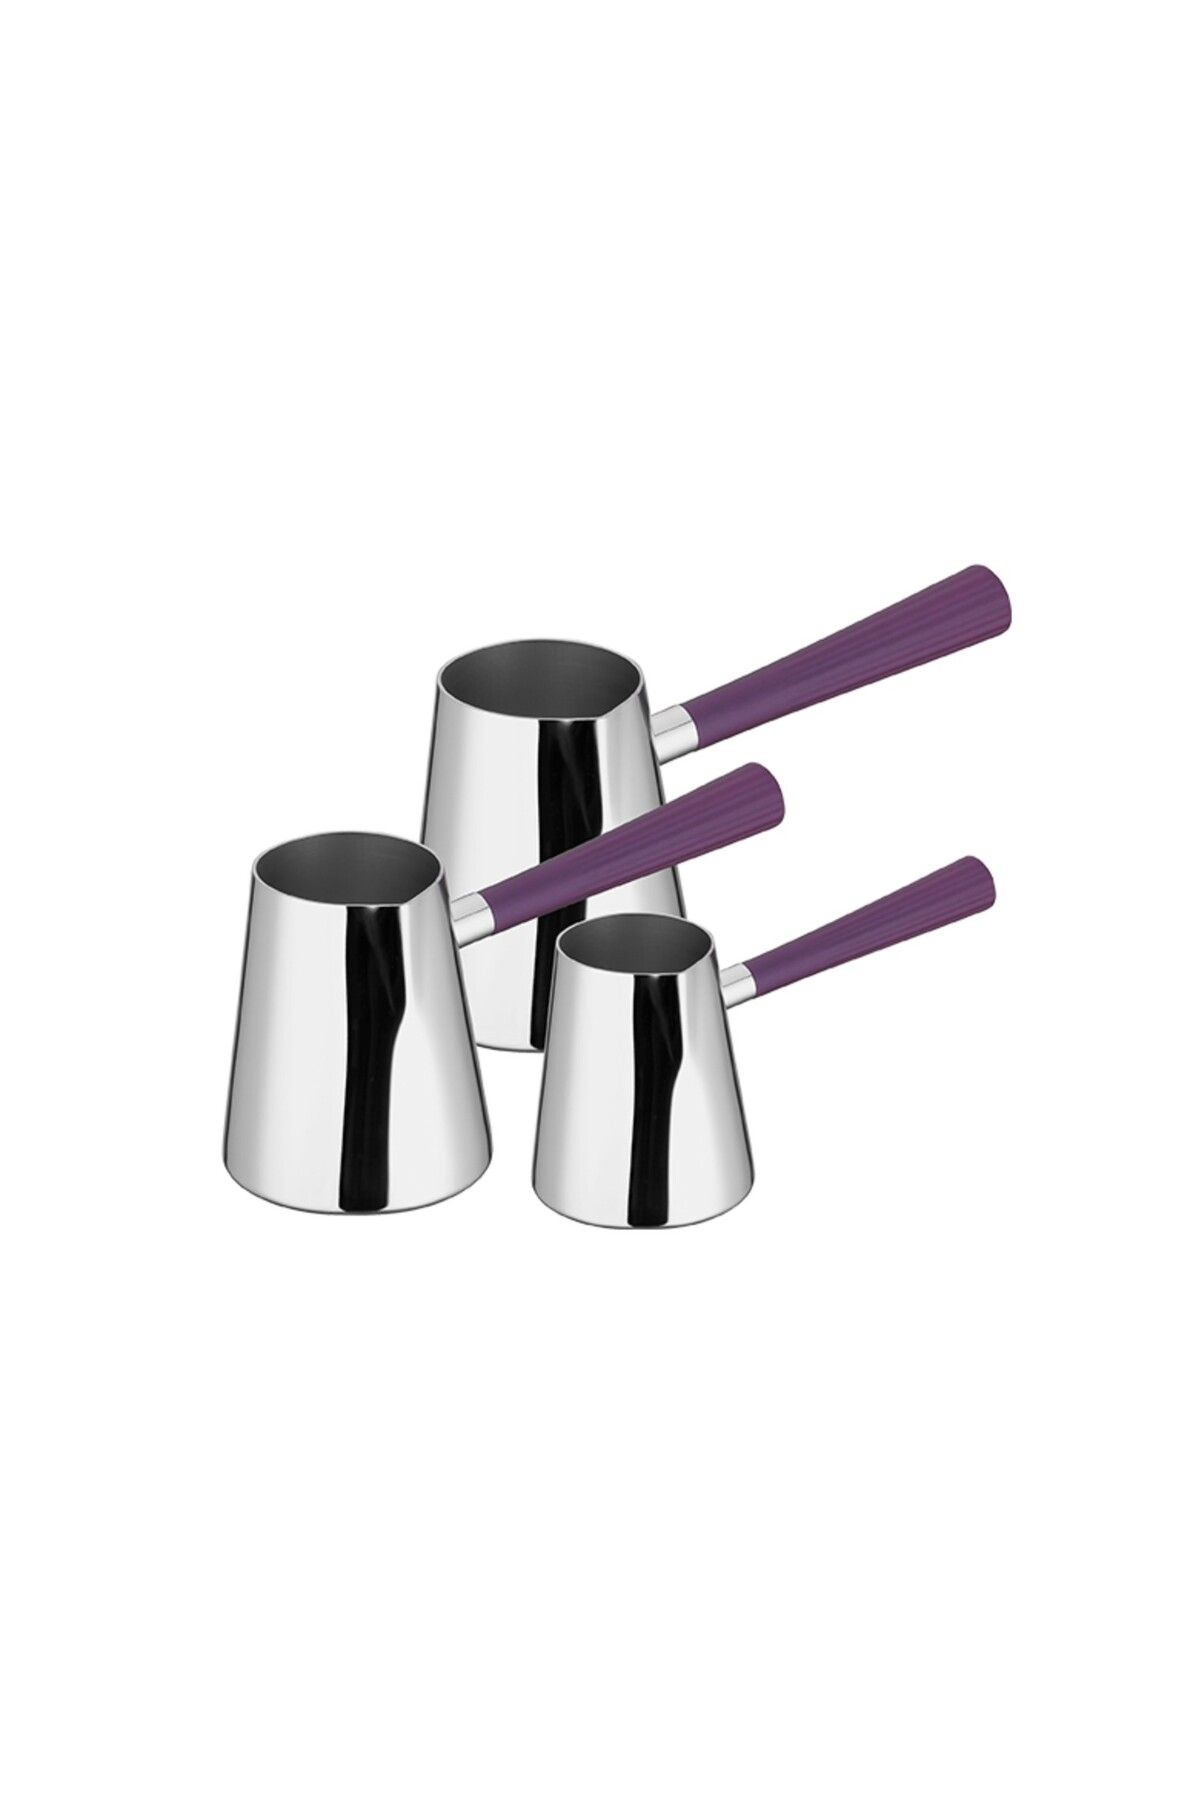 Aryıldız Roma Purple Cezve Takım 3'lü Aısı 304 Paslanmaz Çelik Gövde Iki-dört-altı Kişilik Özel Tasarım